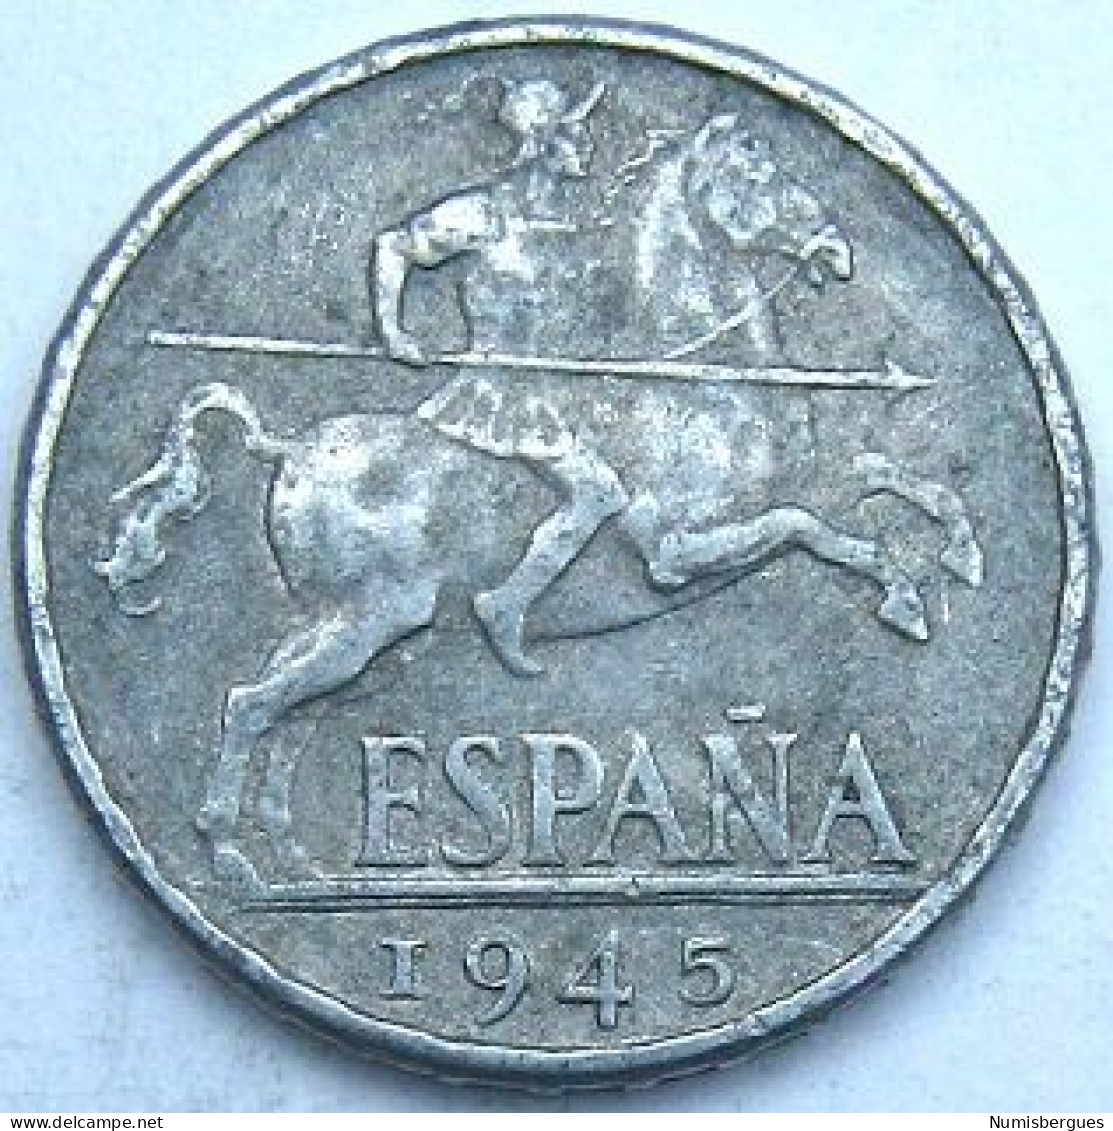 Pièce De Monnaie 10 Centimos 1945 - 10 Centimos